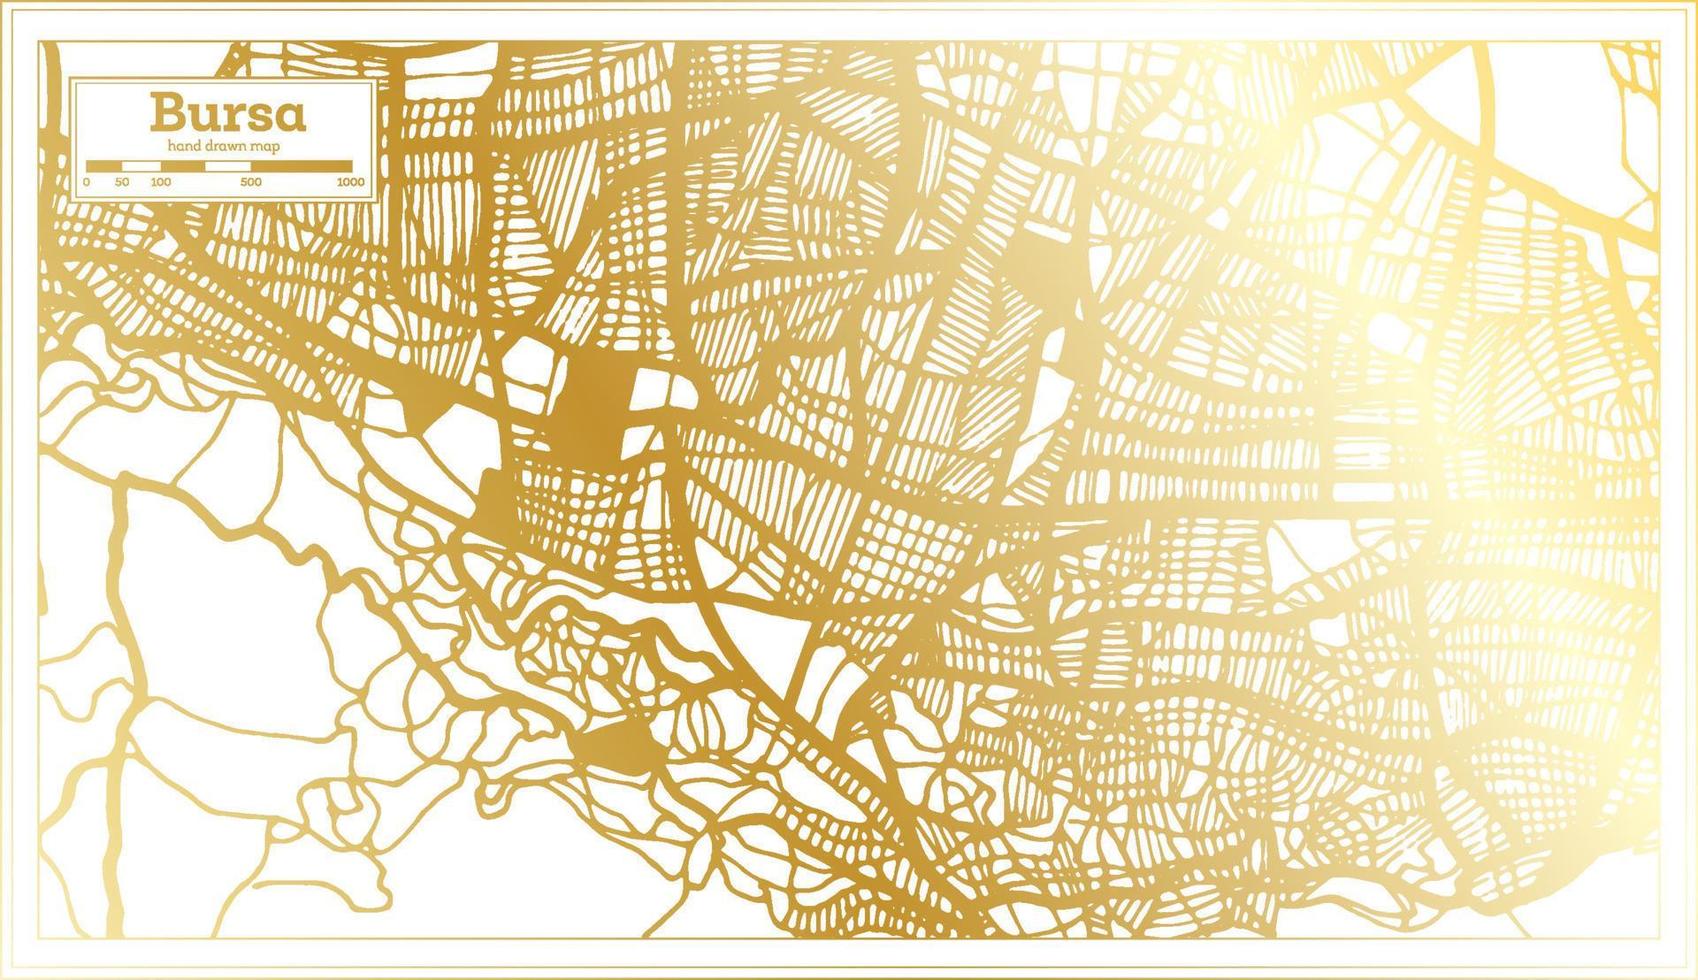 carte de la ville de turquie bursa dans un style rétro de couleur dorée. carte muette. vecteur